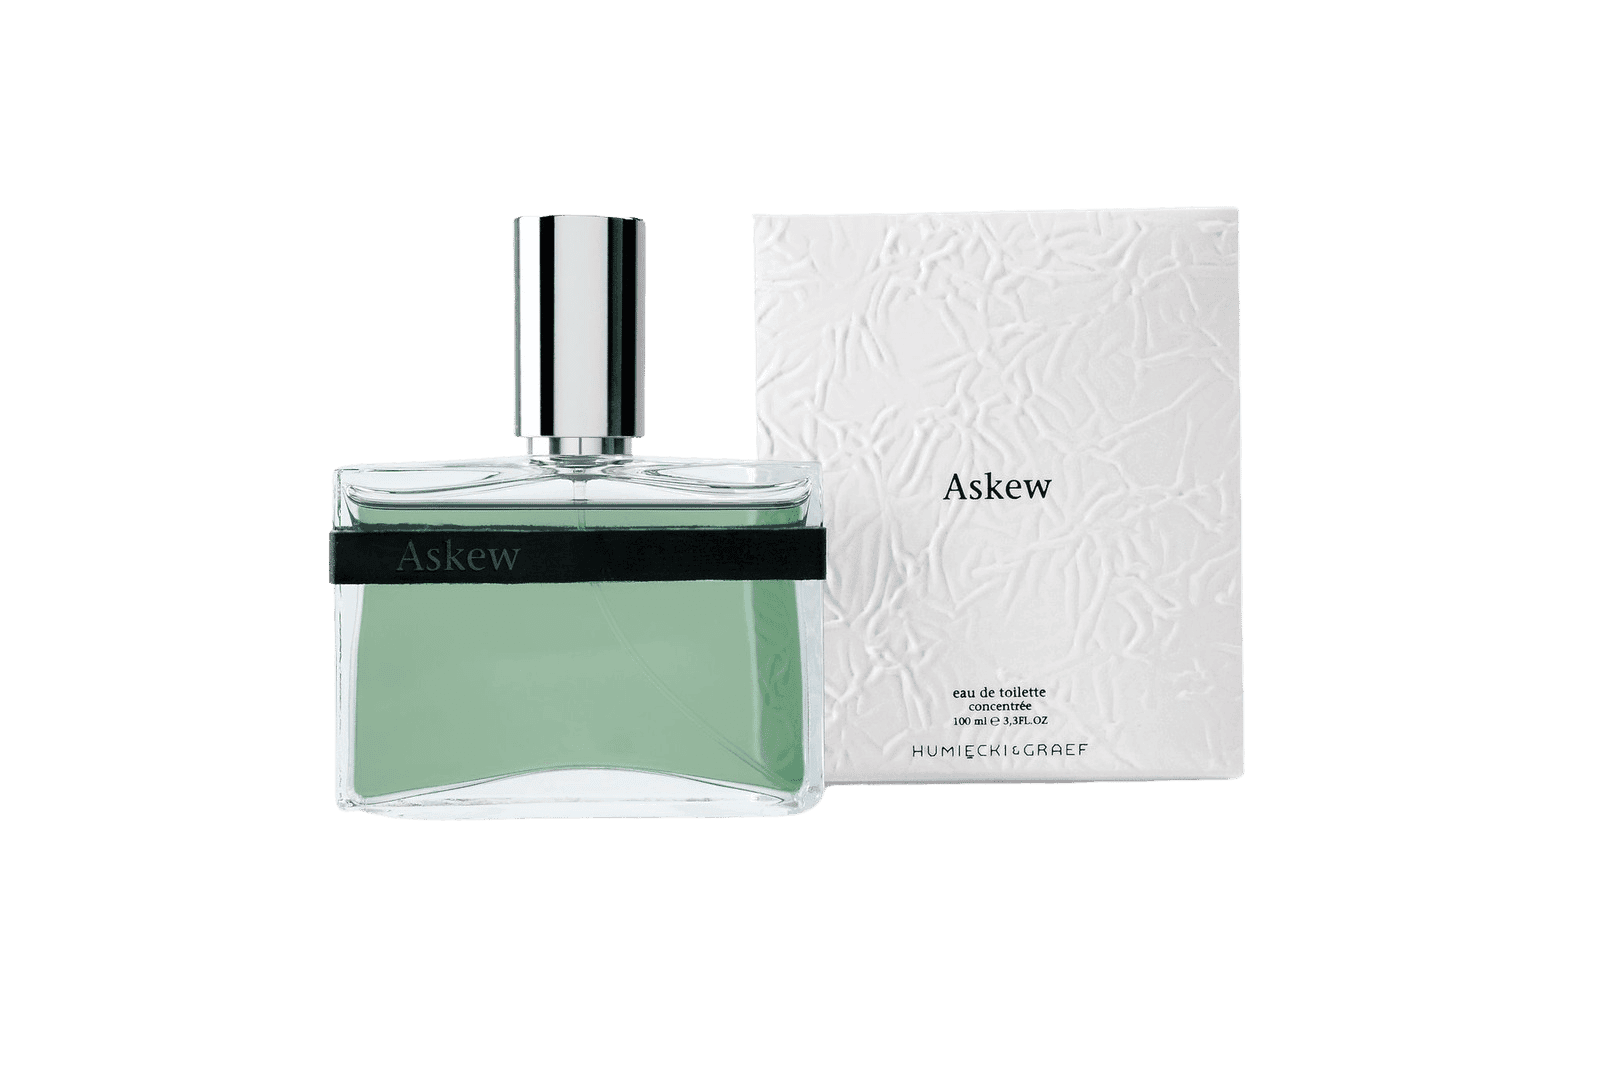 Humiecki en Graef Askew perfume + package | Perfume Lounge